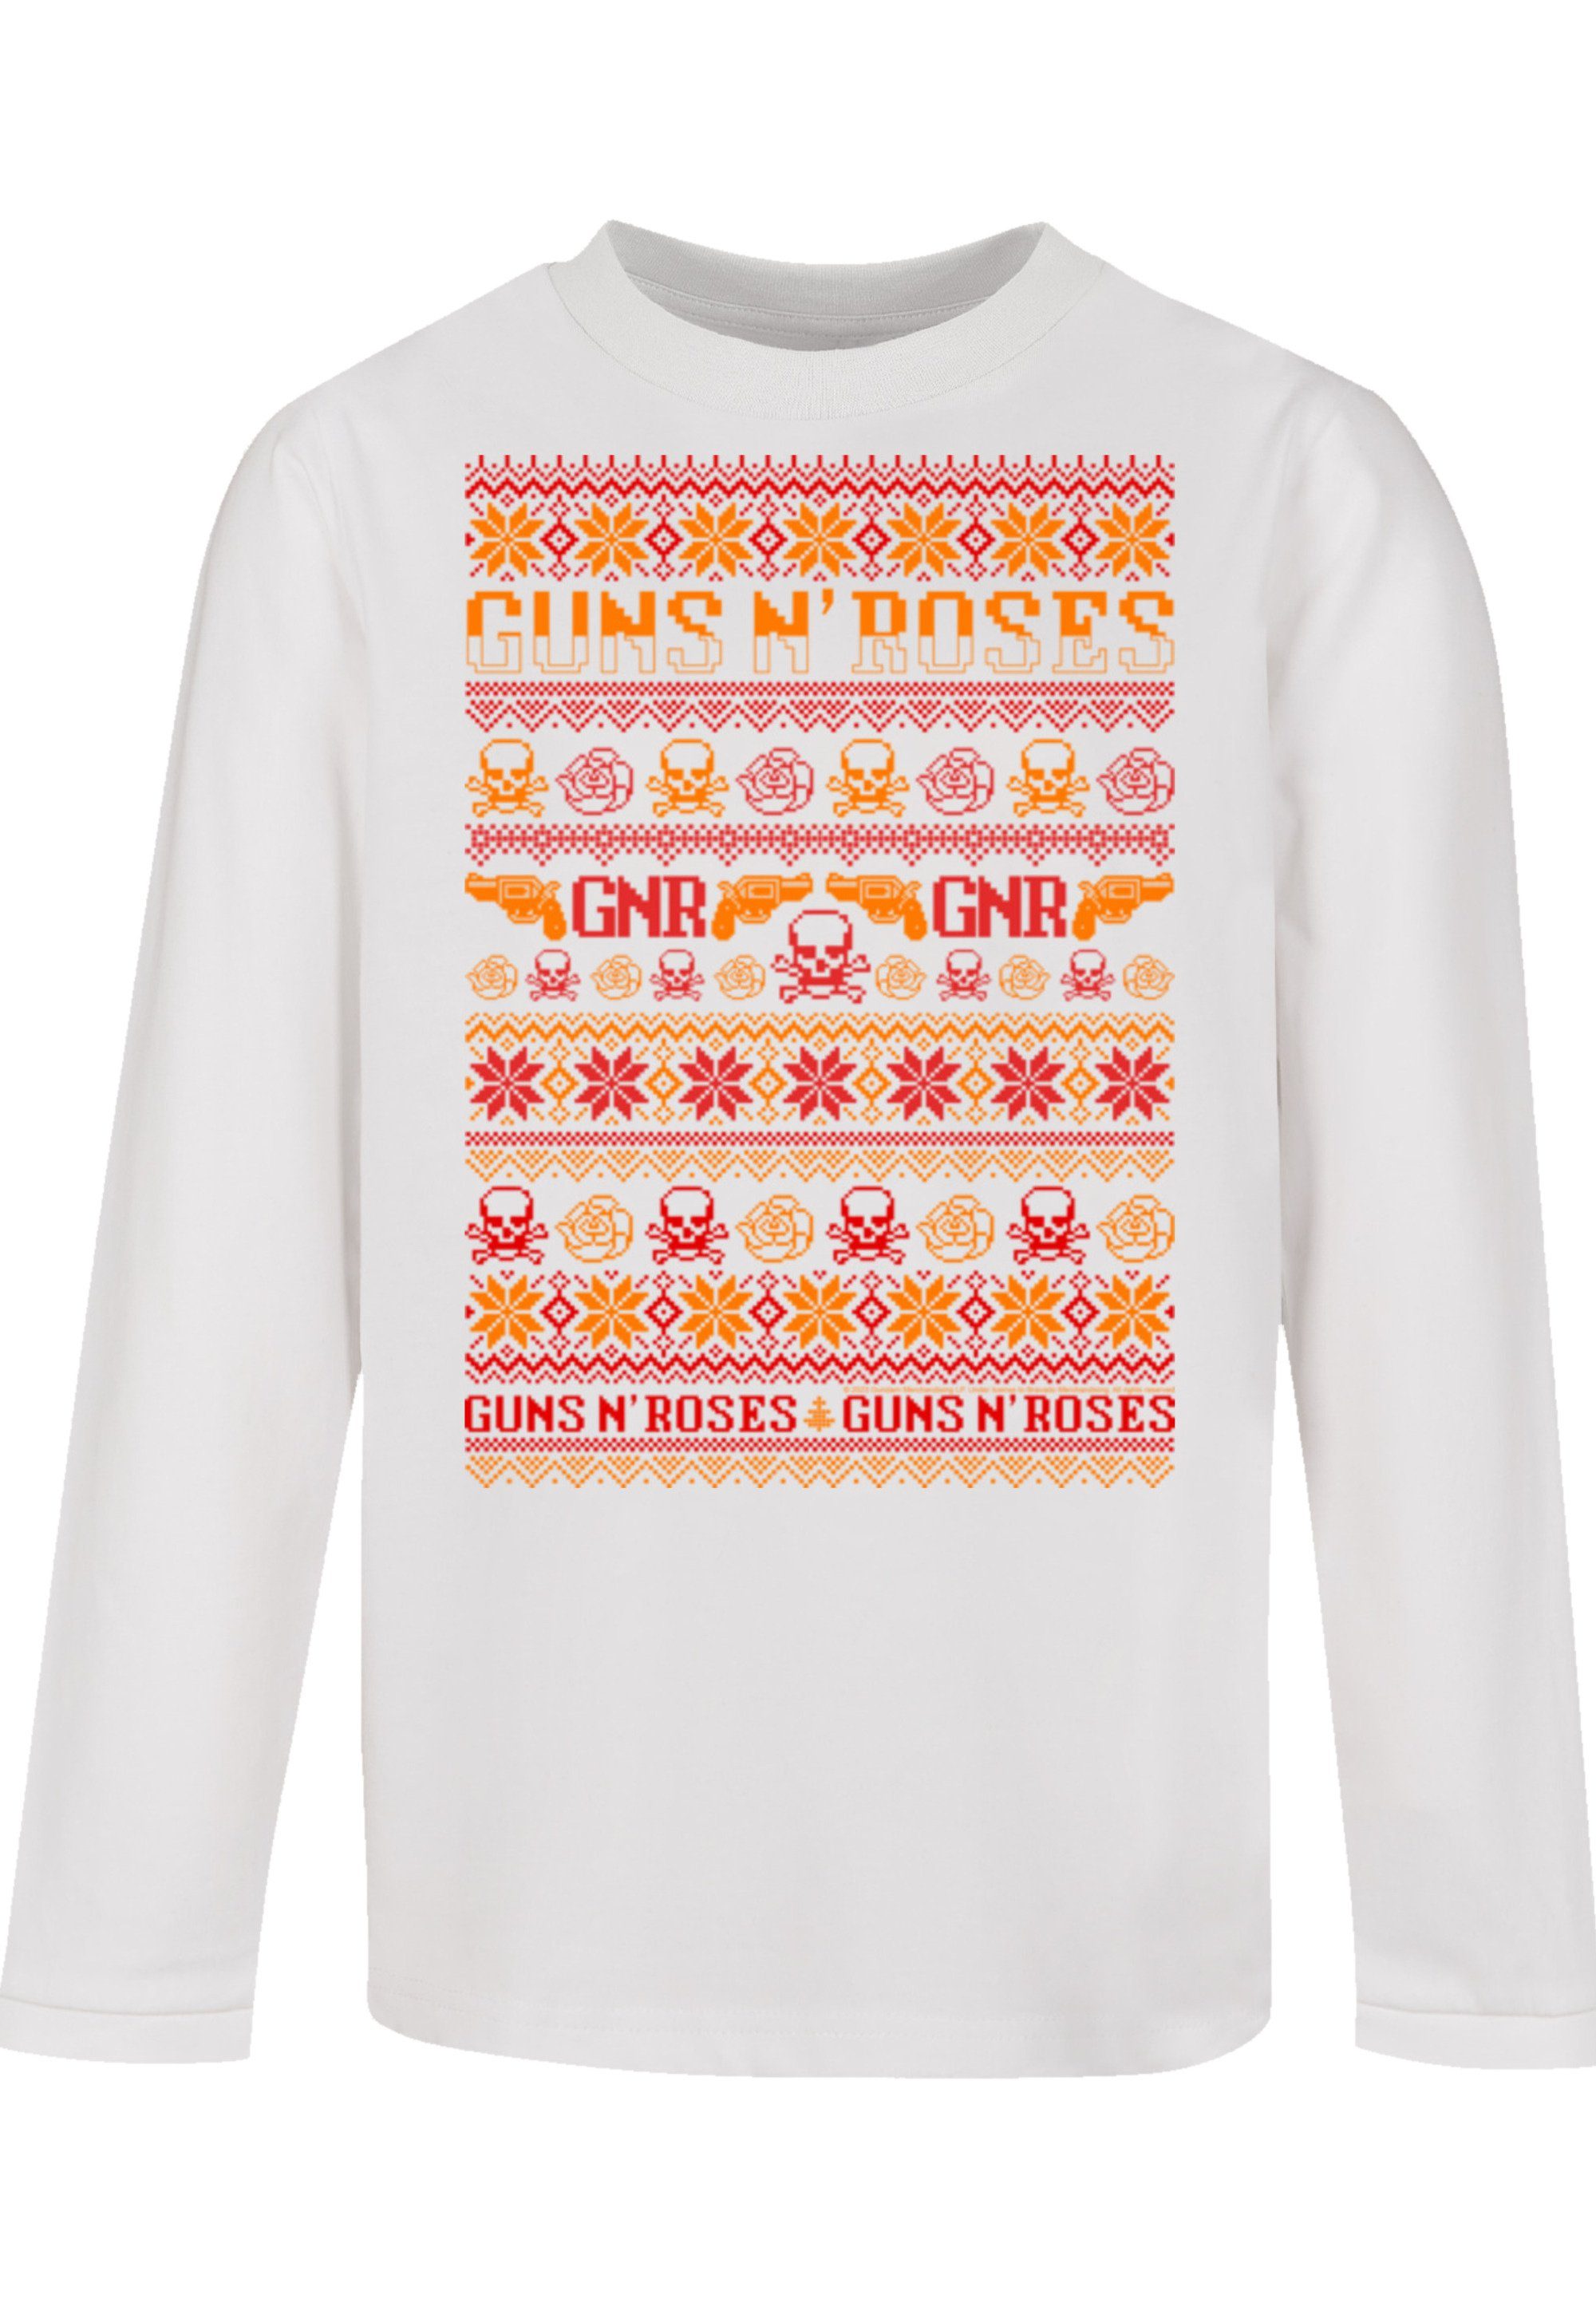 weiß T-Shirt Weihnachten Christmas Musik,Band,Logo F4NT4STIC n' Guns Roses